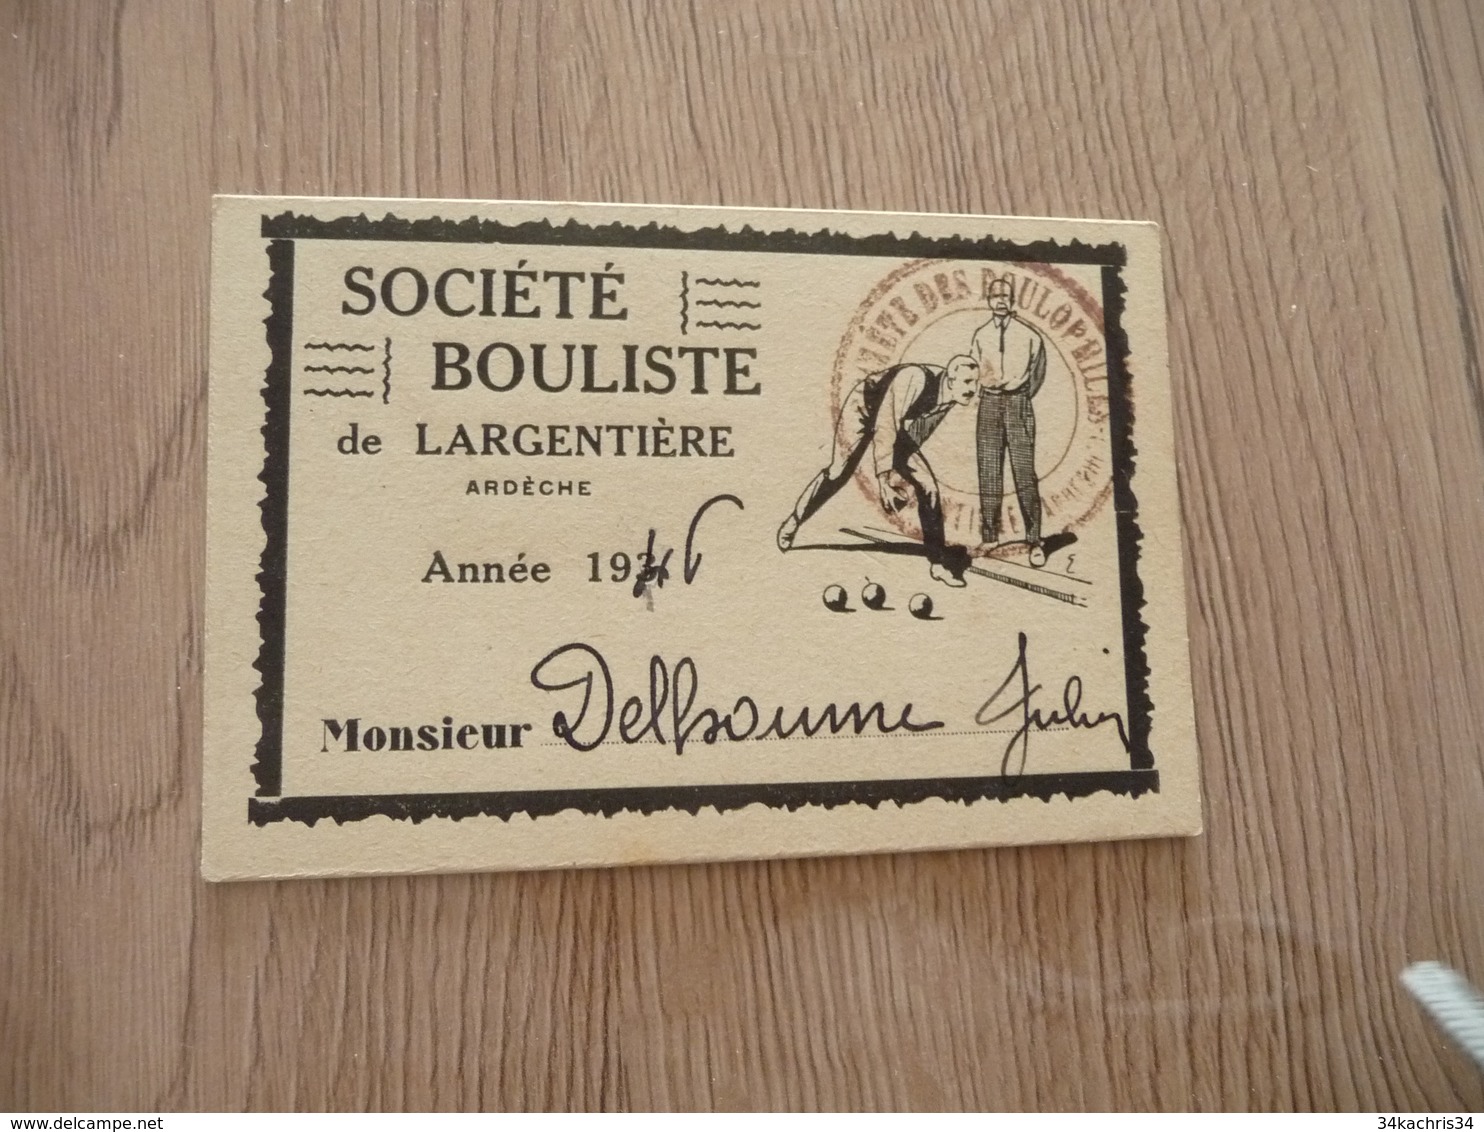 Carte De Membre Pétanque Boules Société Boulistique De Largentière Ardèche 1946 - Pétanque